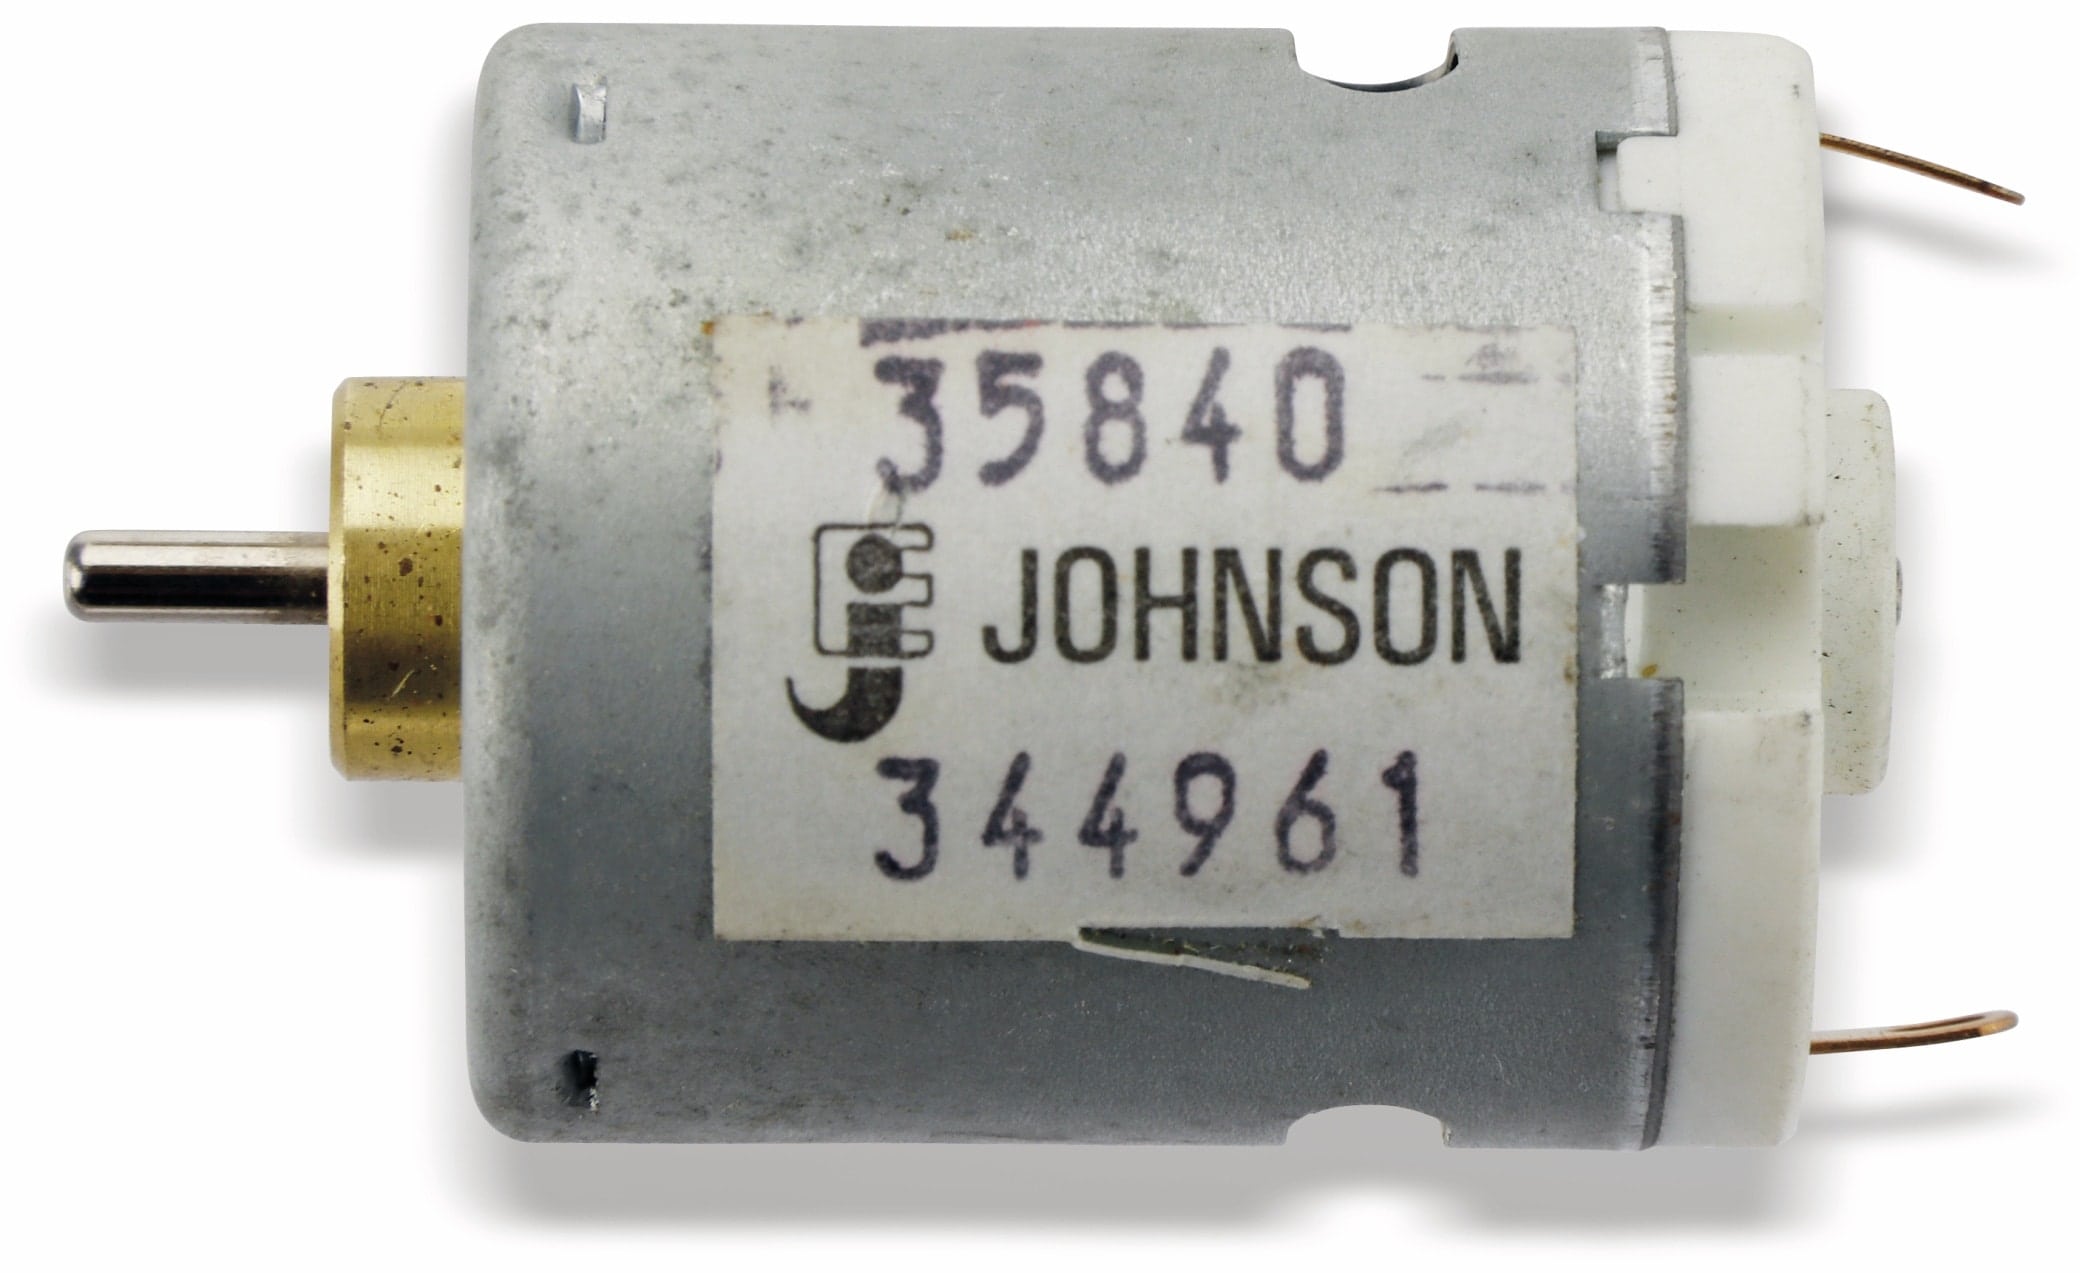 Johnson Gleichstrommotor 35840, 12V-